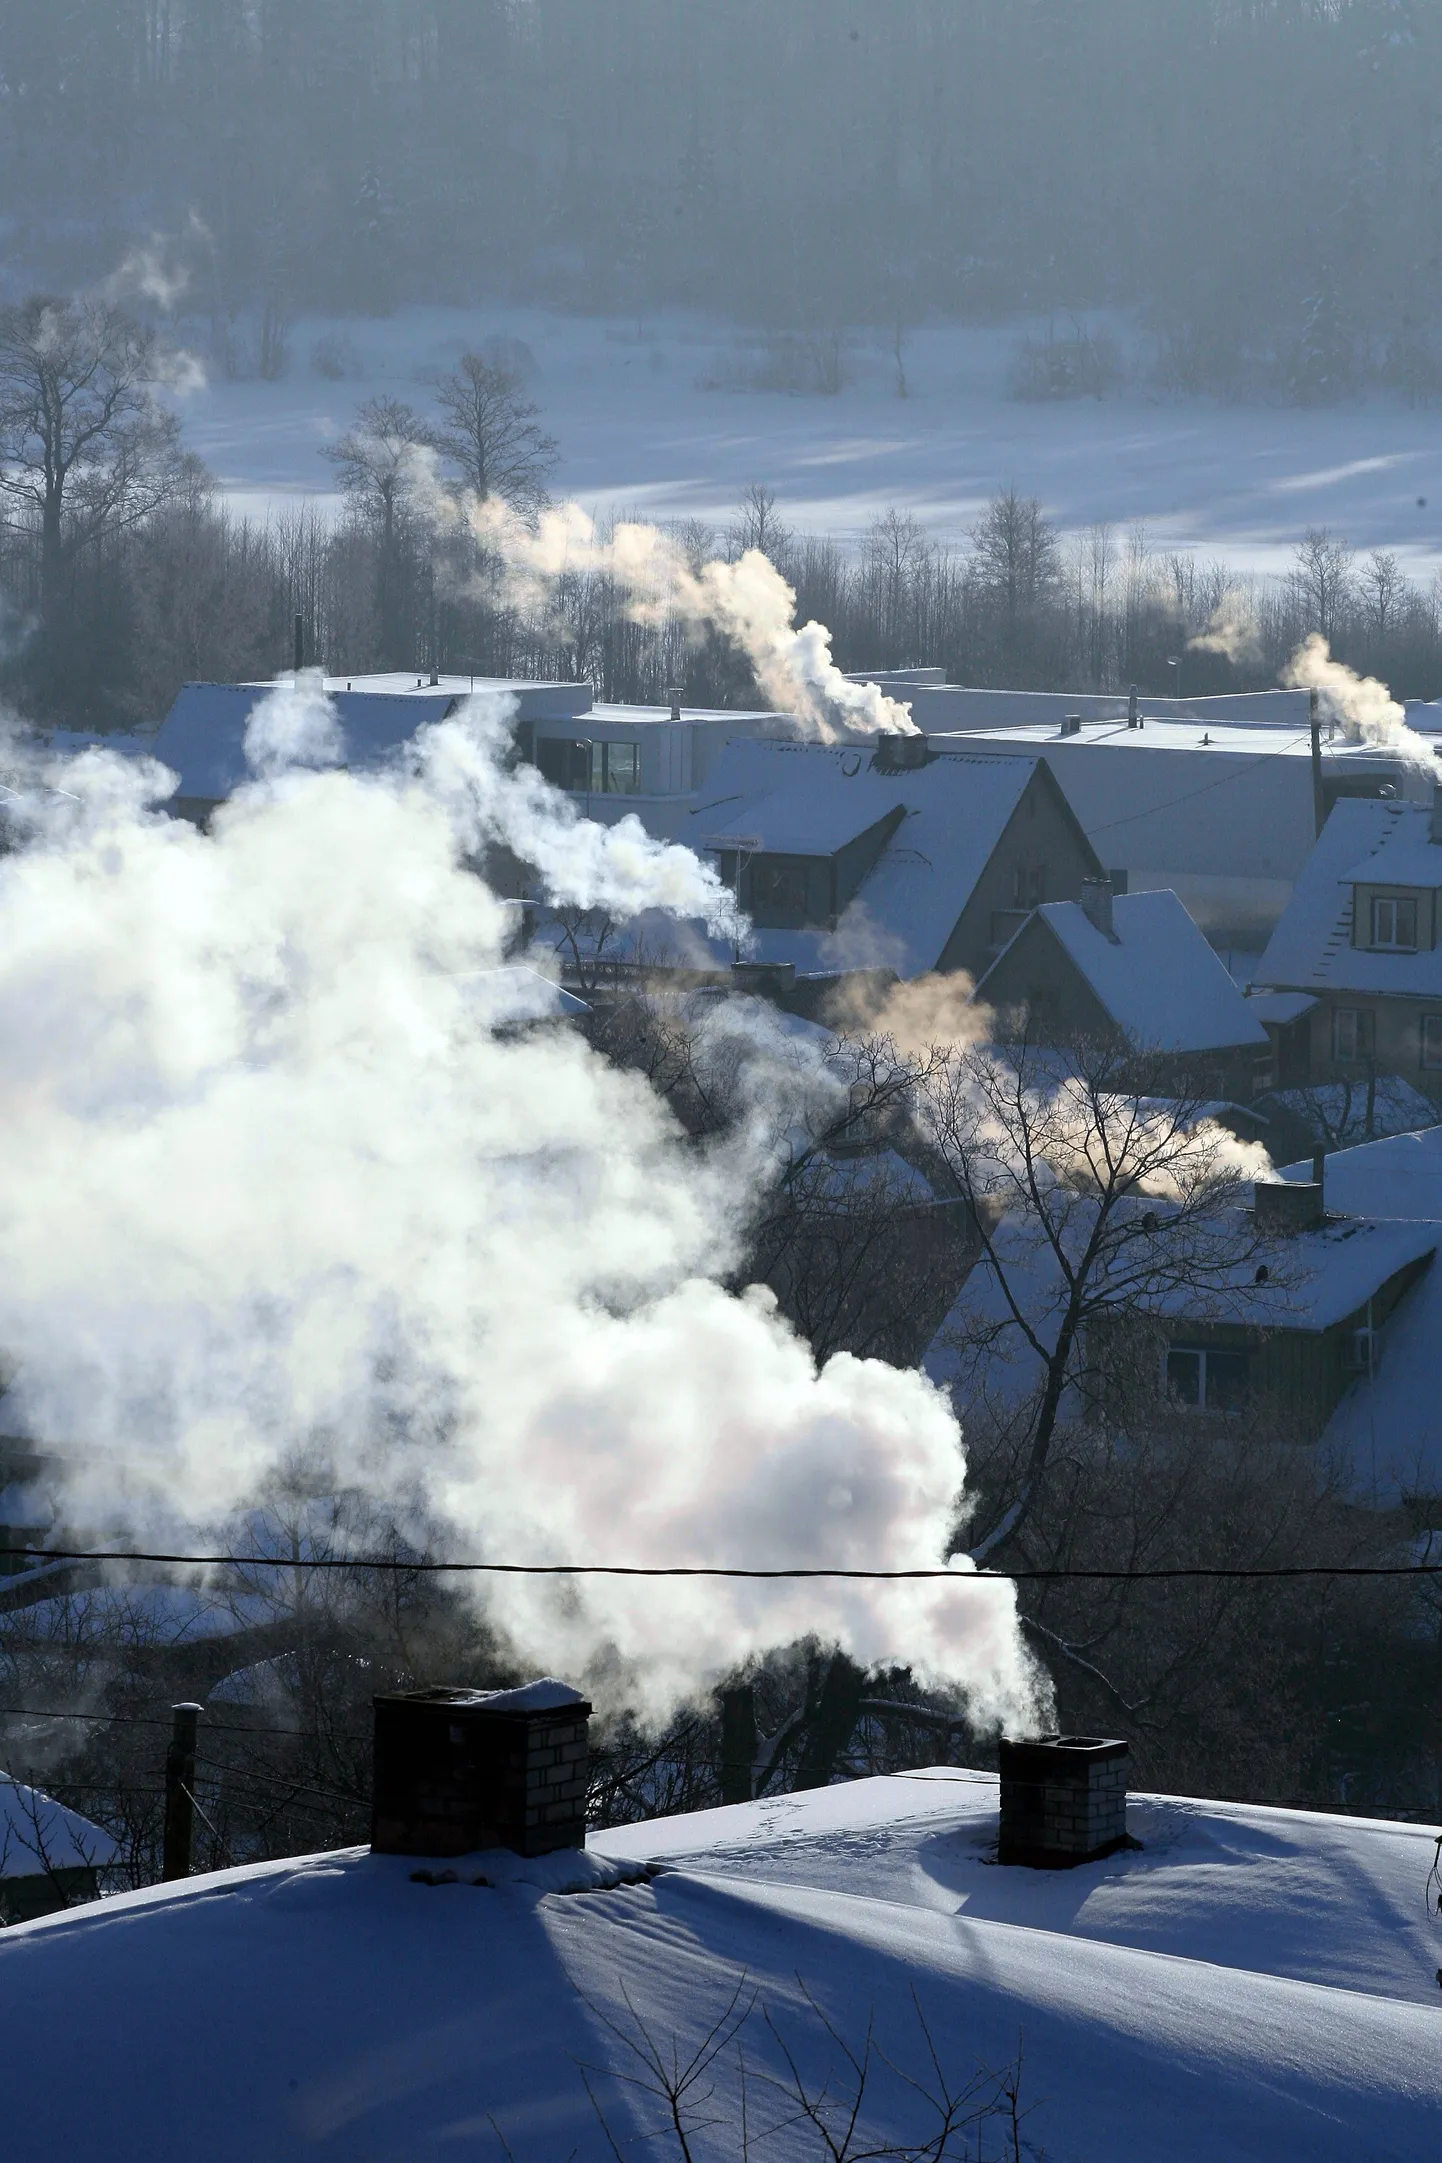 SAKALA01: TALV : VILJANDI, EESTI, 05FEB12
Talv. Talvine viljandi. Linn on mattund suitsu. Käre pakane. 
er/ Foto ELMO RIIG/ SAKALA